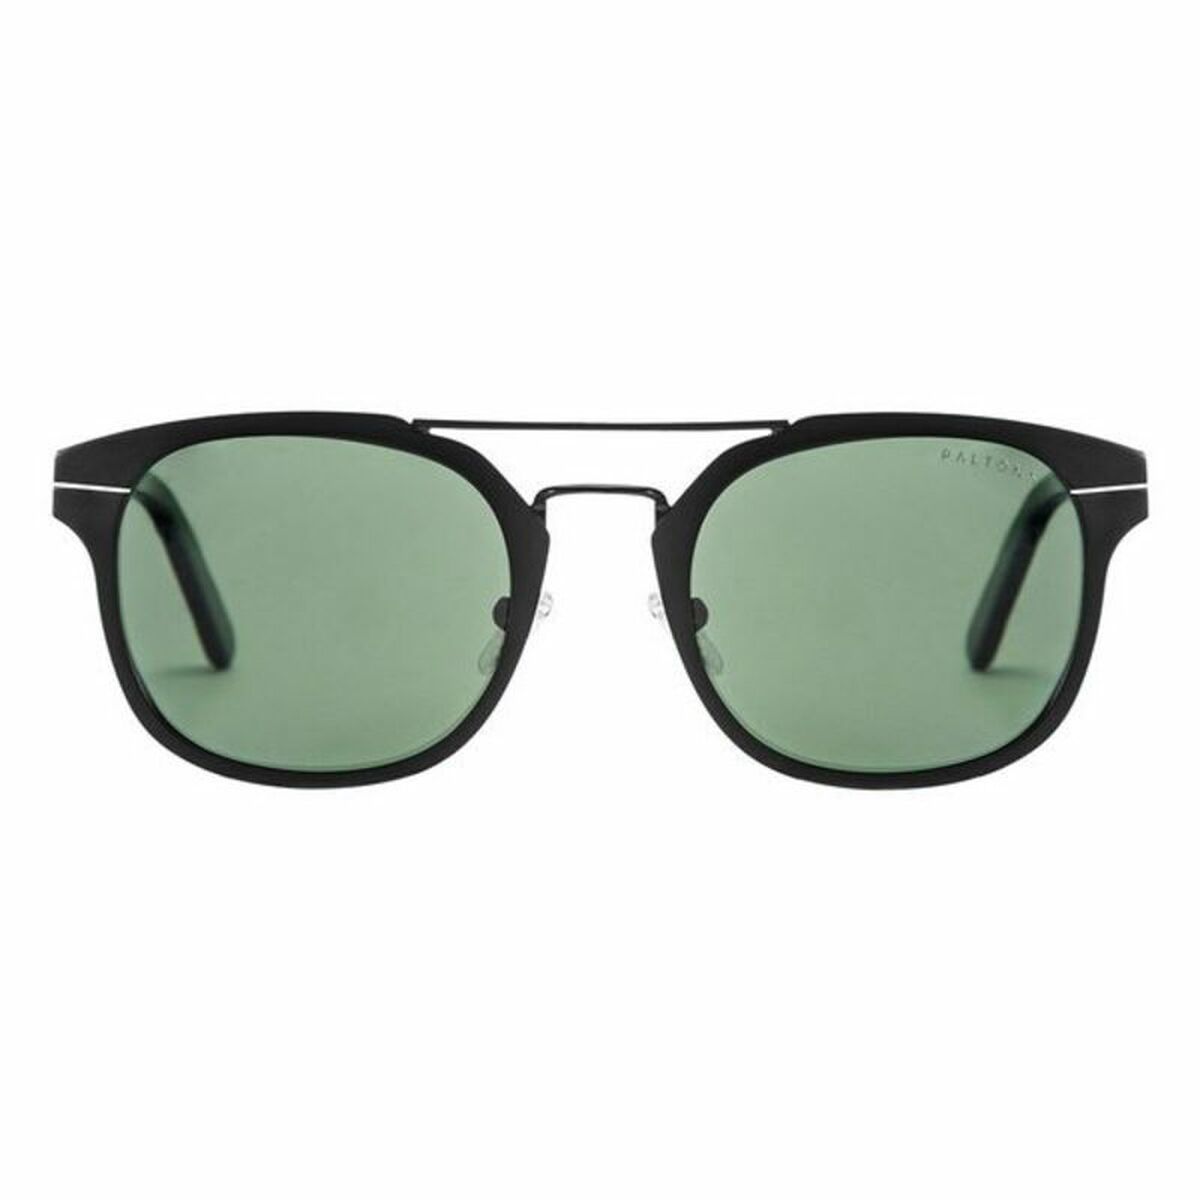 Lunettes de soleil Unisexe Niue Paltons Sunglasses (48 mm)